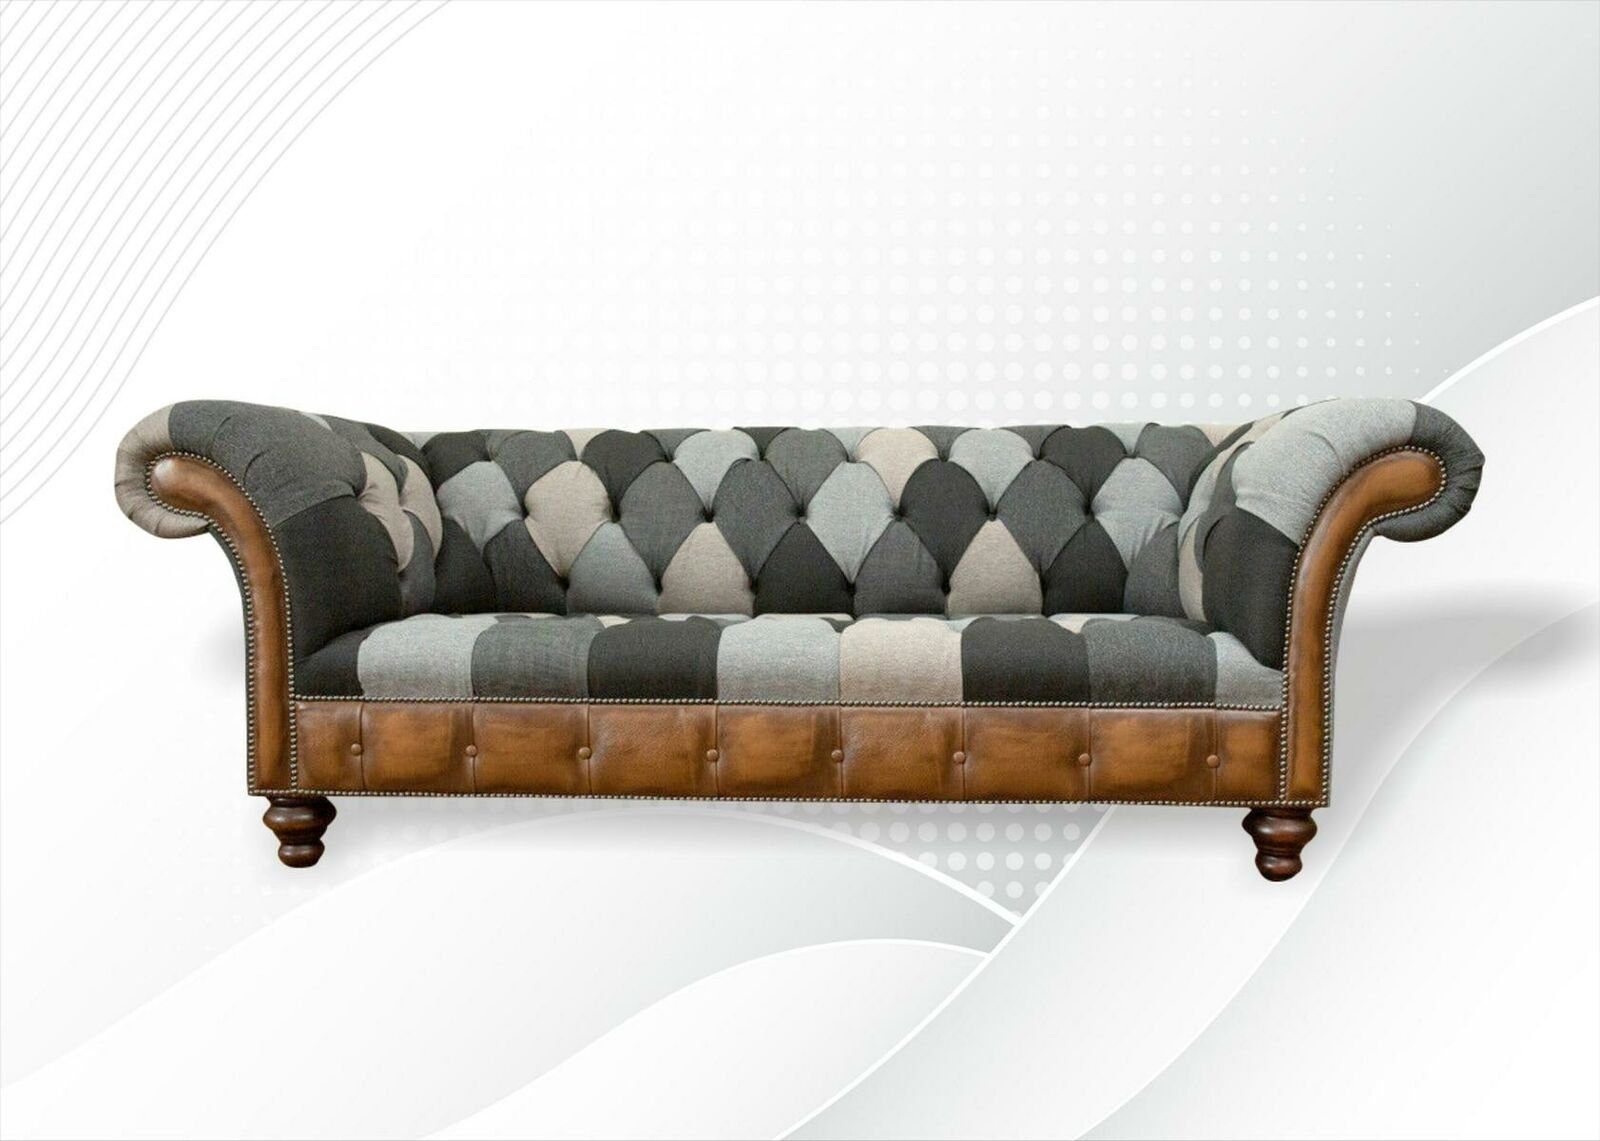 JVmoebel Chesterfield-Sofa, Chesterfield Mehrfarbig 3 Sitzer Sofa Dreisitzer Design Couchen